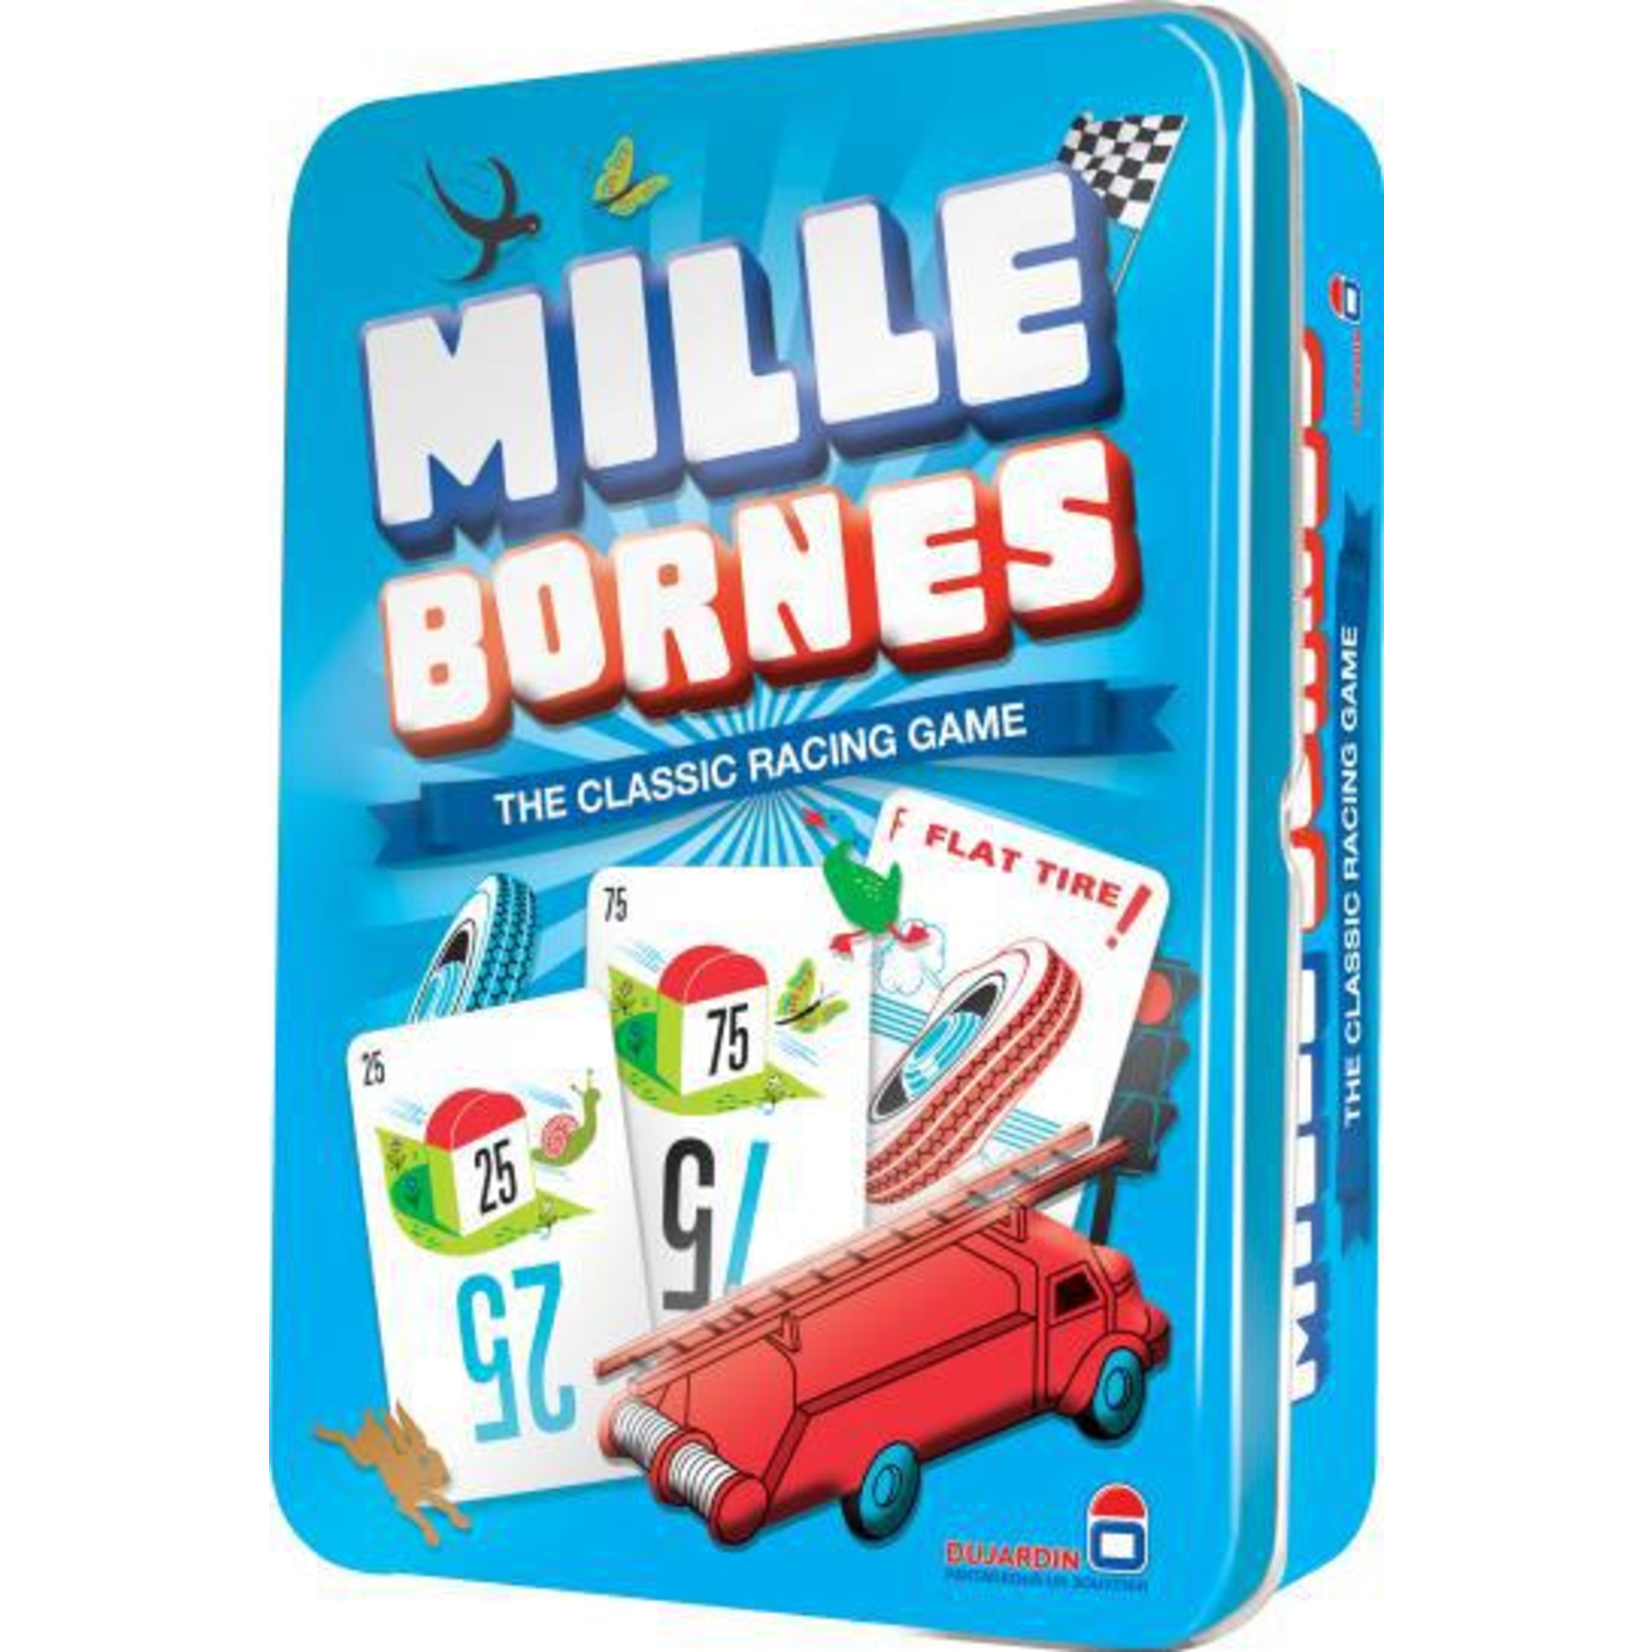 Mille Bornes - Labyrinth Games & Puzzles